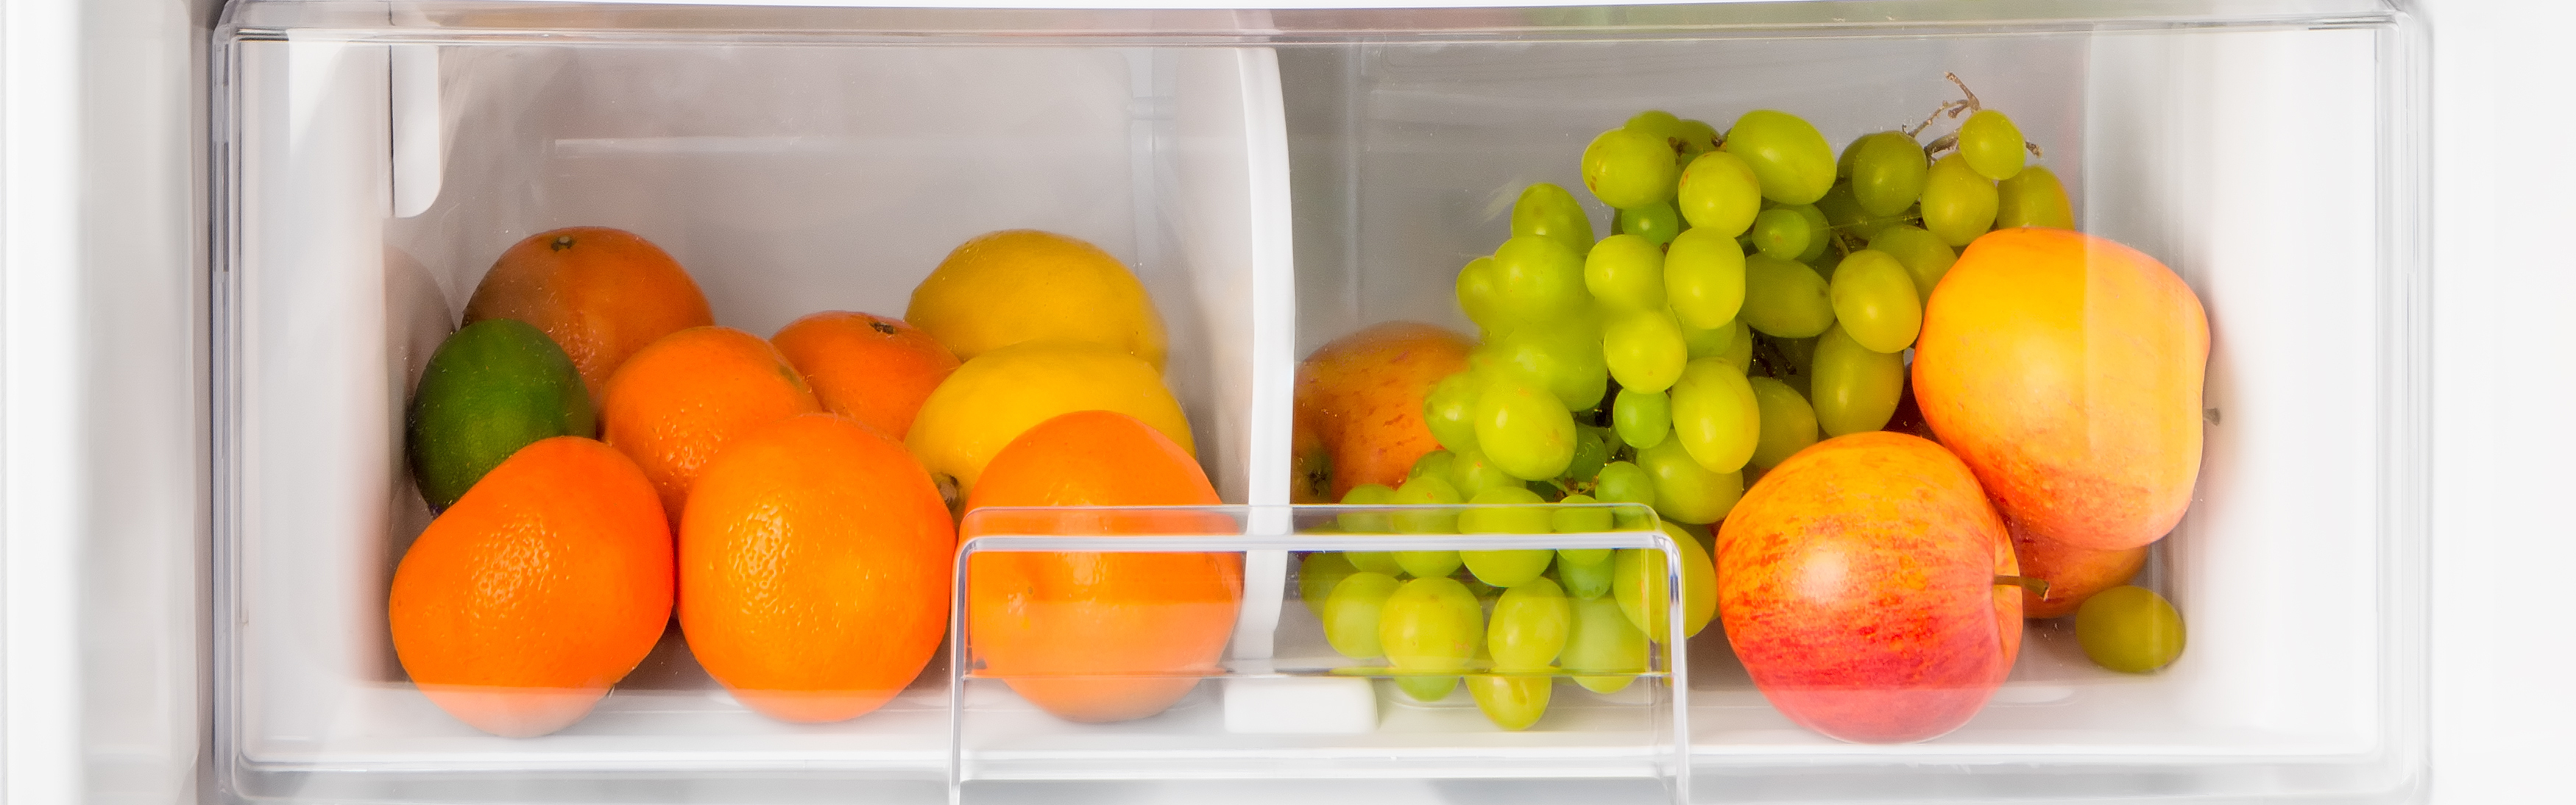 uvas en el cajón del refrigerador